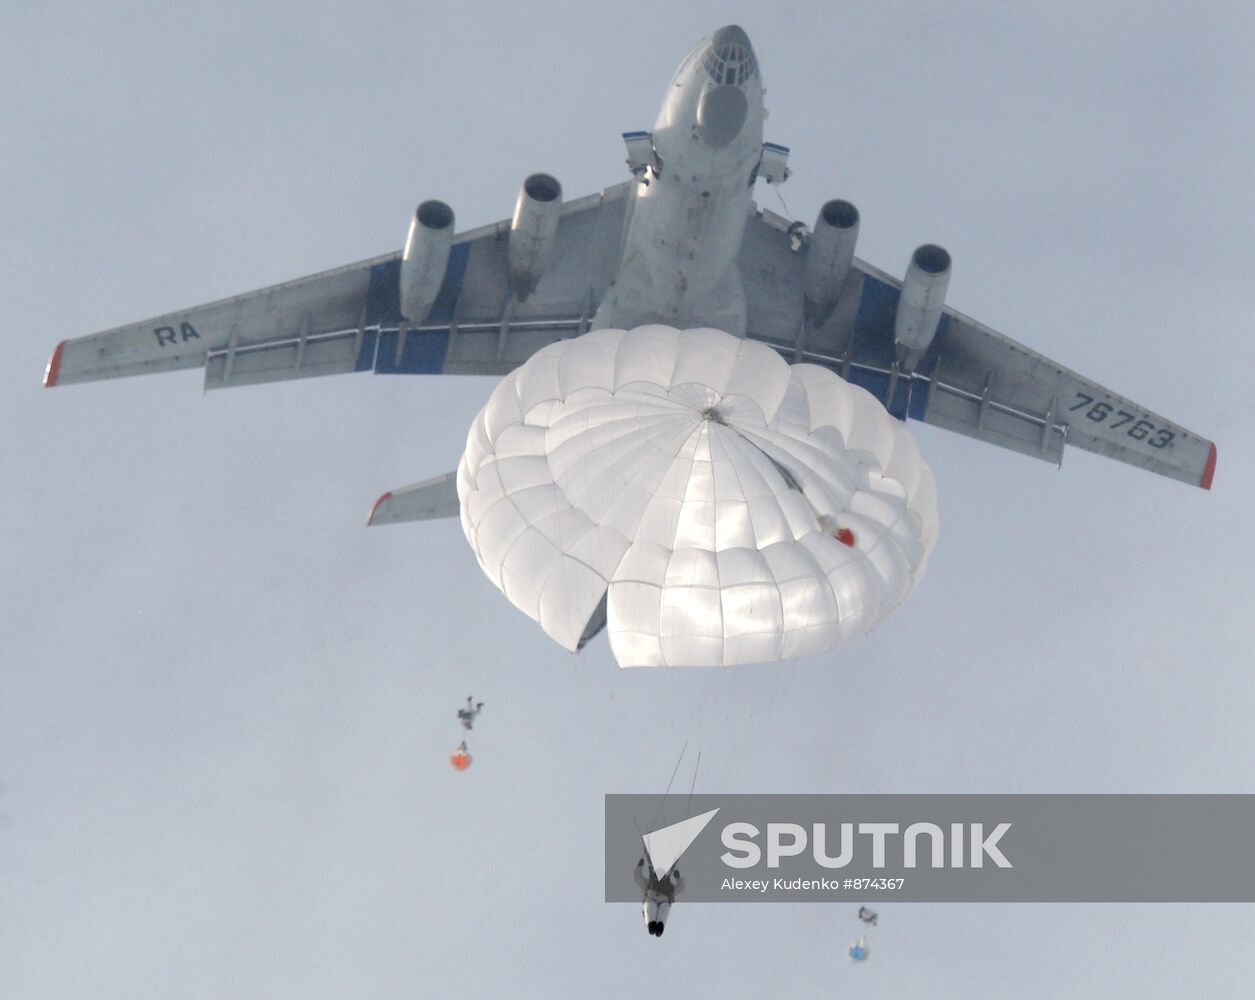 Air Landing troops exercise in Ryazan Region